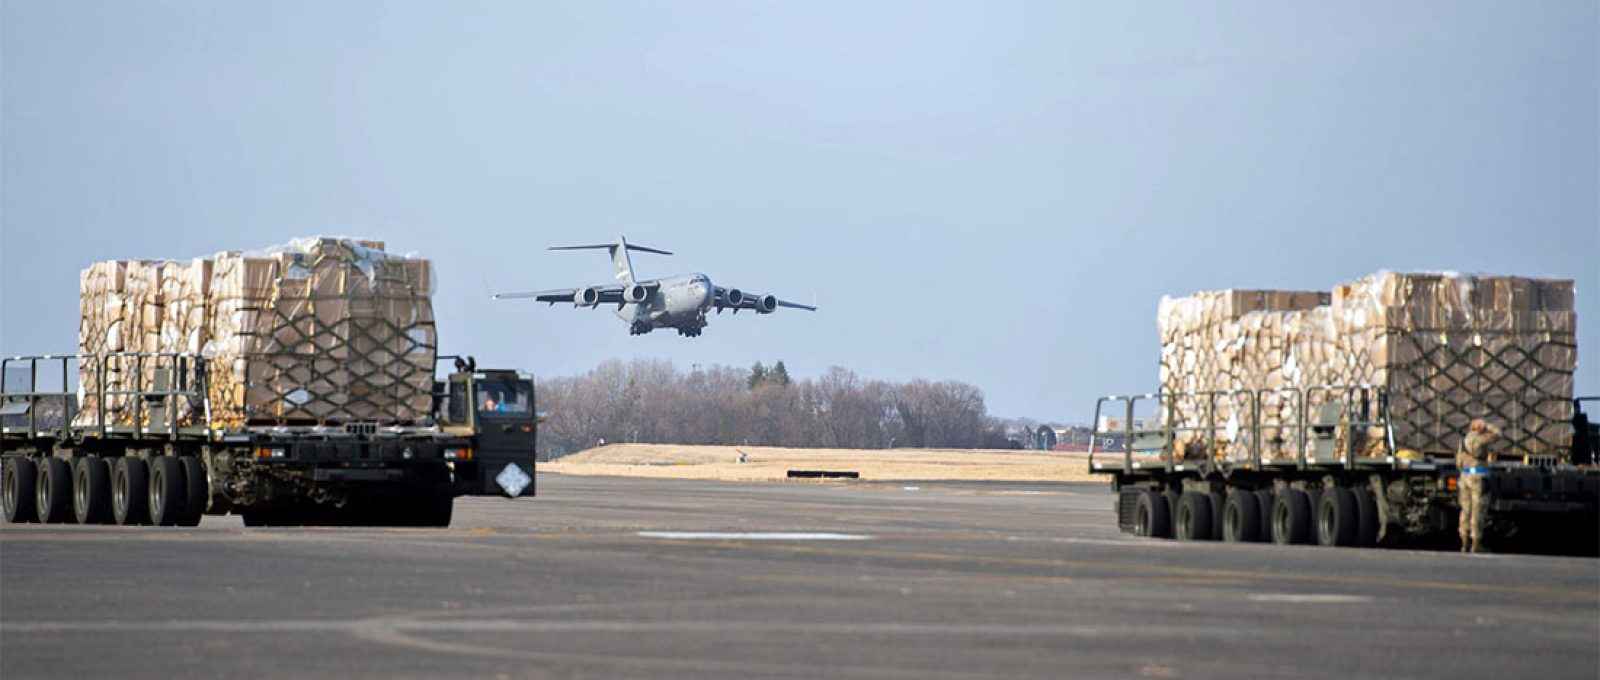 Uma aeronave C-17 Globemaster III da Força Aérea dos EUA pousa na Base Aérea de Yokota, Japão, para carregar suprimentos destinados à Ucrânia, 16 de março de 2022 (Sgt. Ryan Lackey/Força Aérea dos EUA).